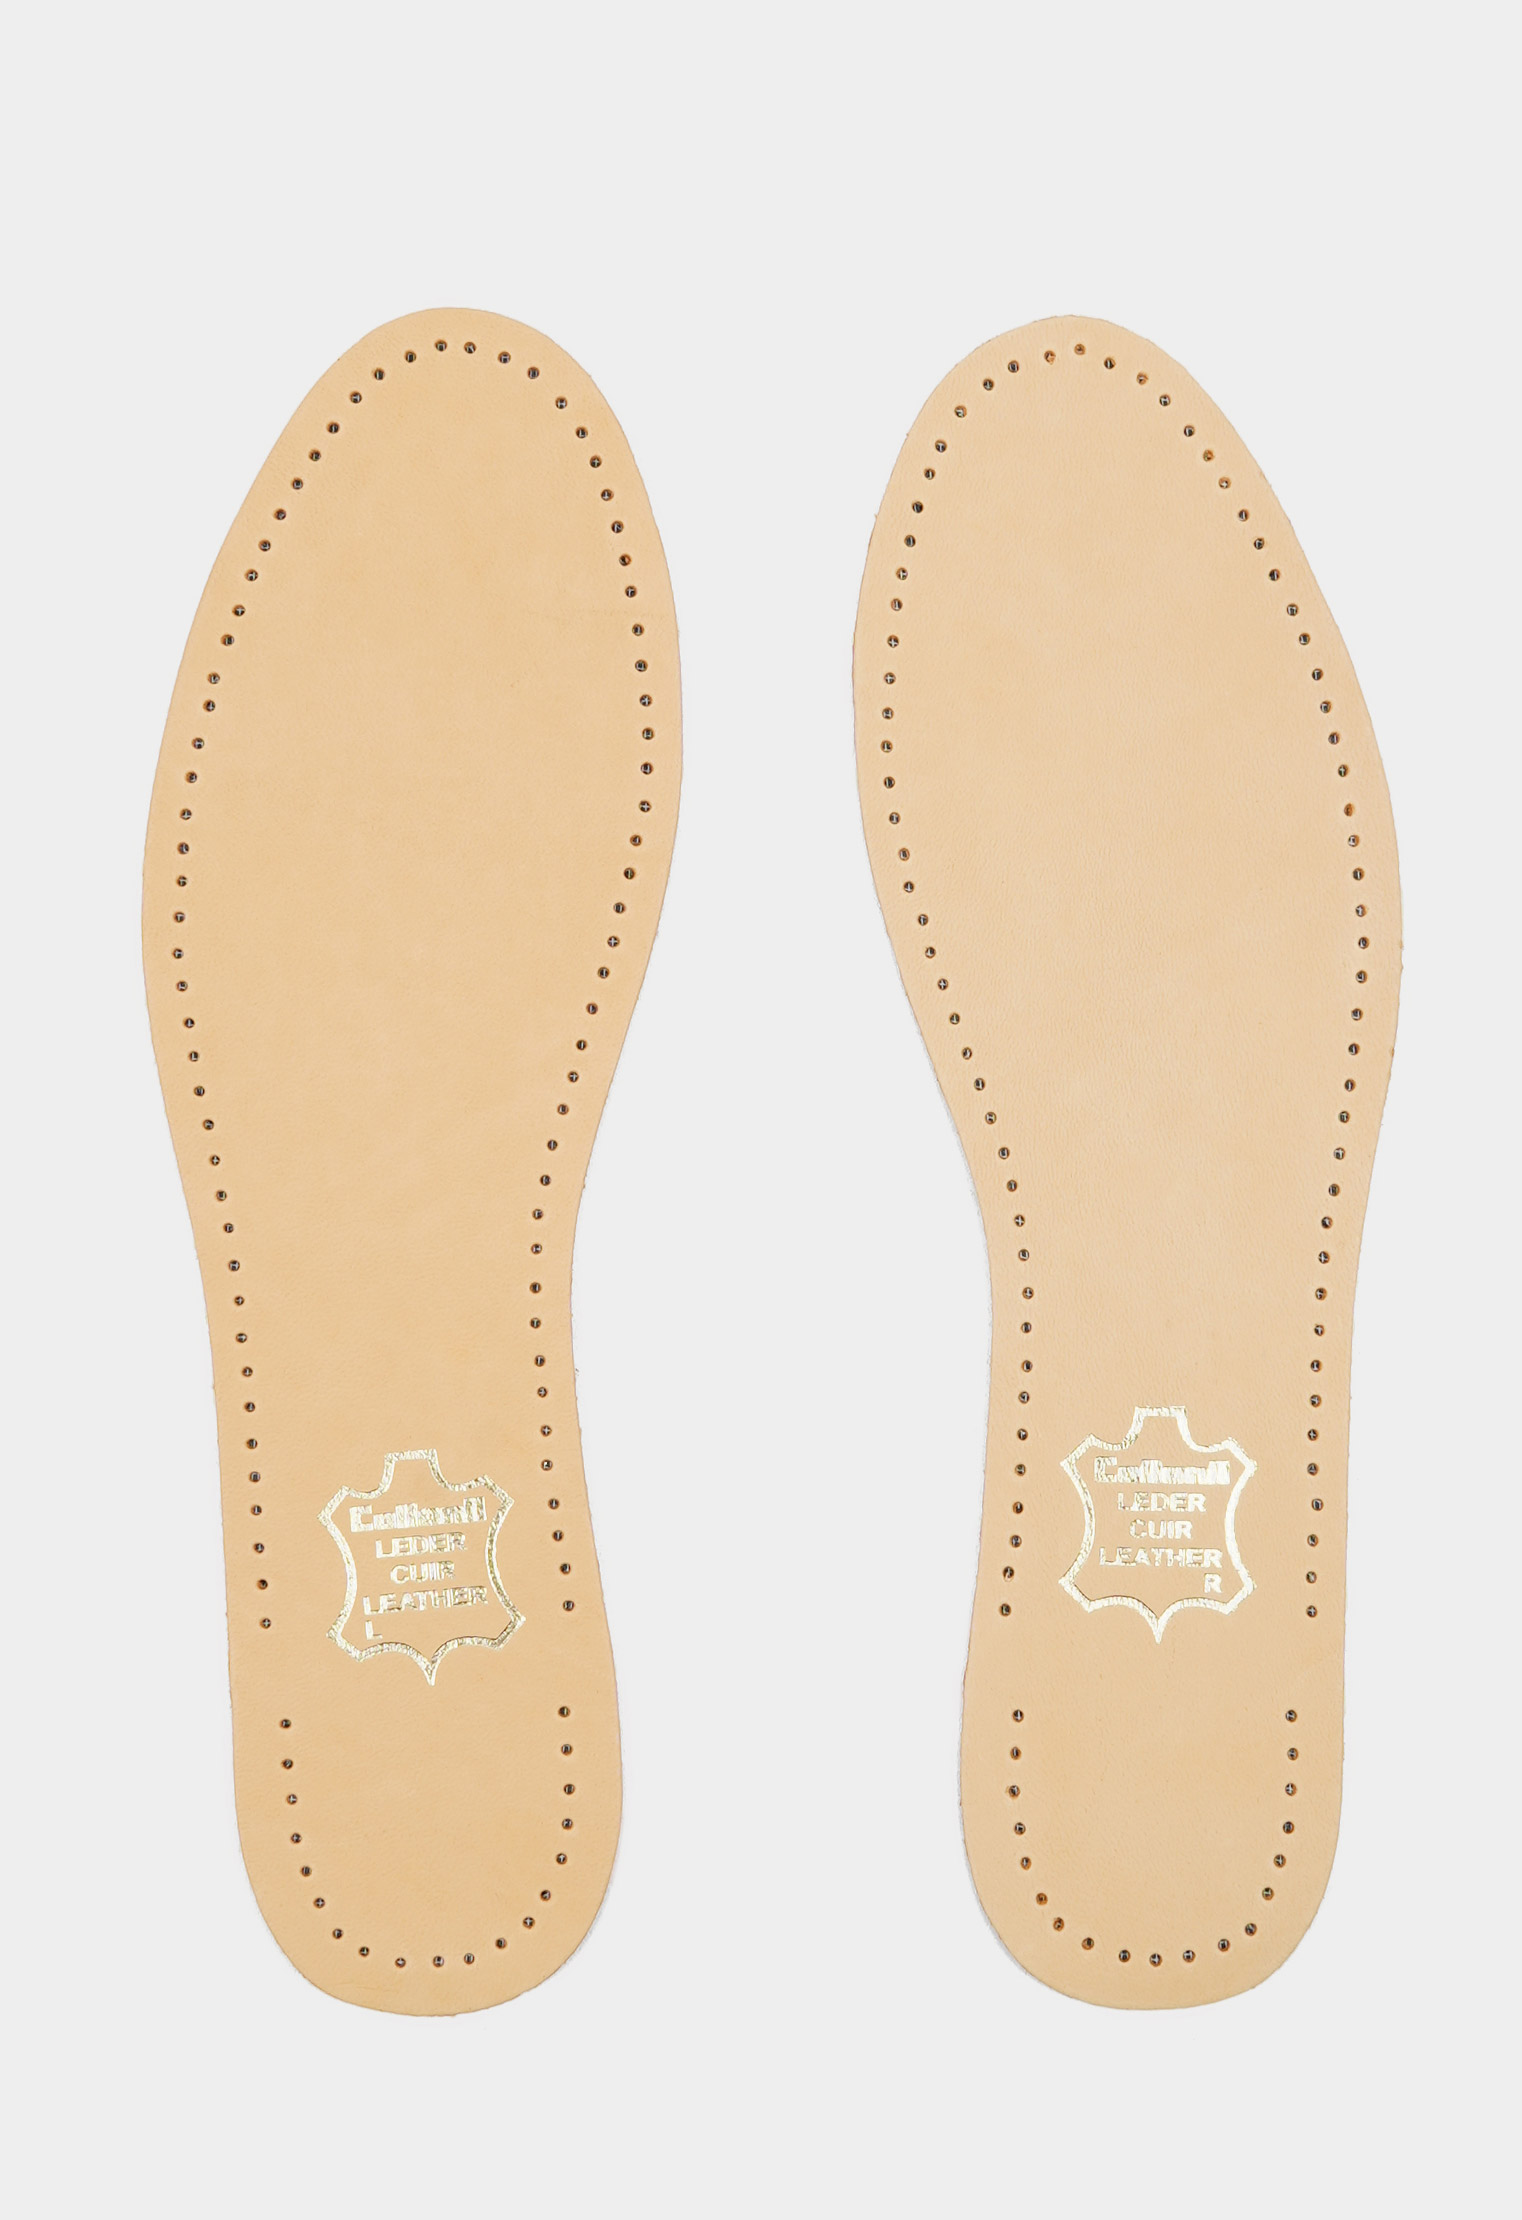 Уход за обувью 20-1641 Стельки Luxor /р.40/ (Размер: 40) уход за обувью 20 8956 tarrago стельки leder foam натуральная кожа пеноматериал р 35 36